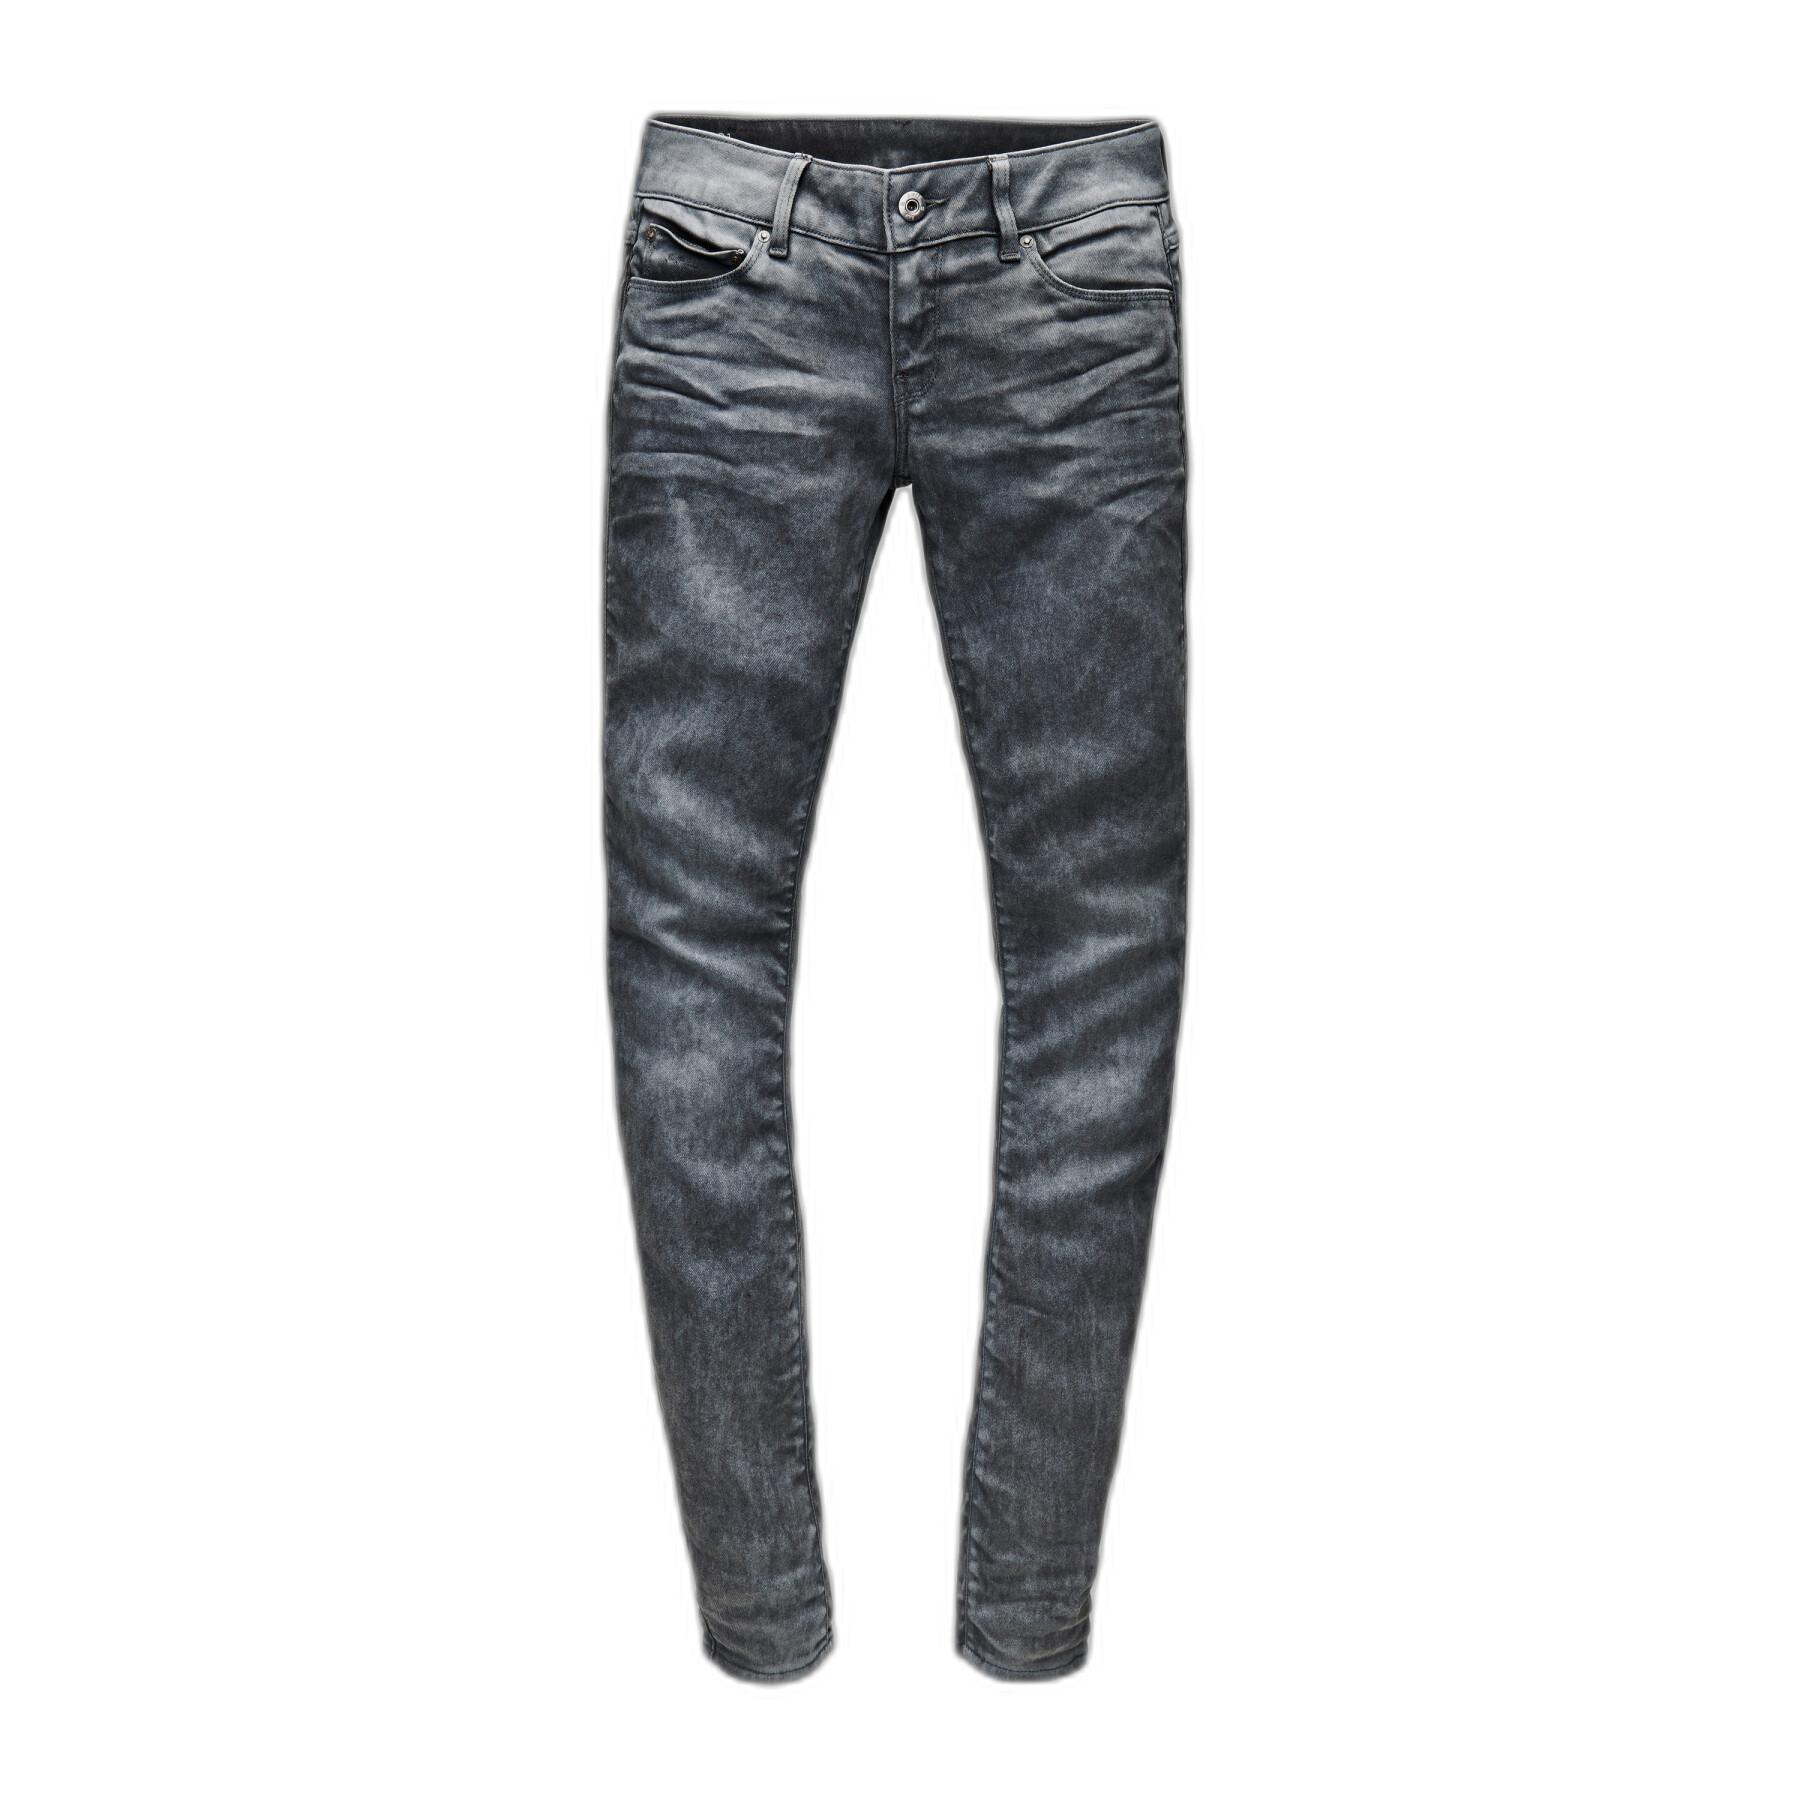 Jeans mit niedriger Leibhöhe für Frauen G-Star 3301